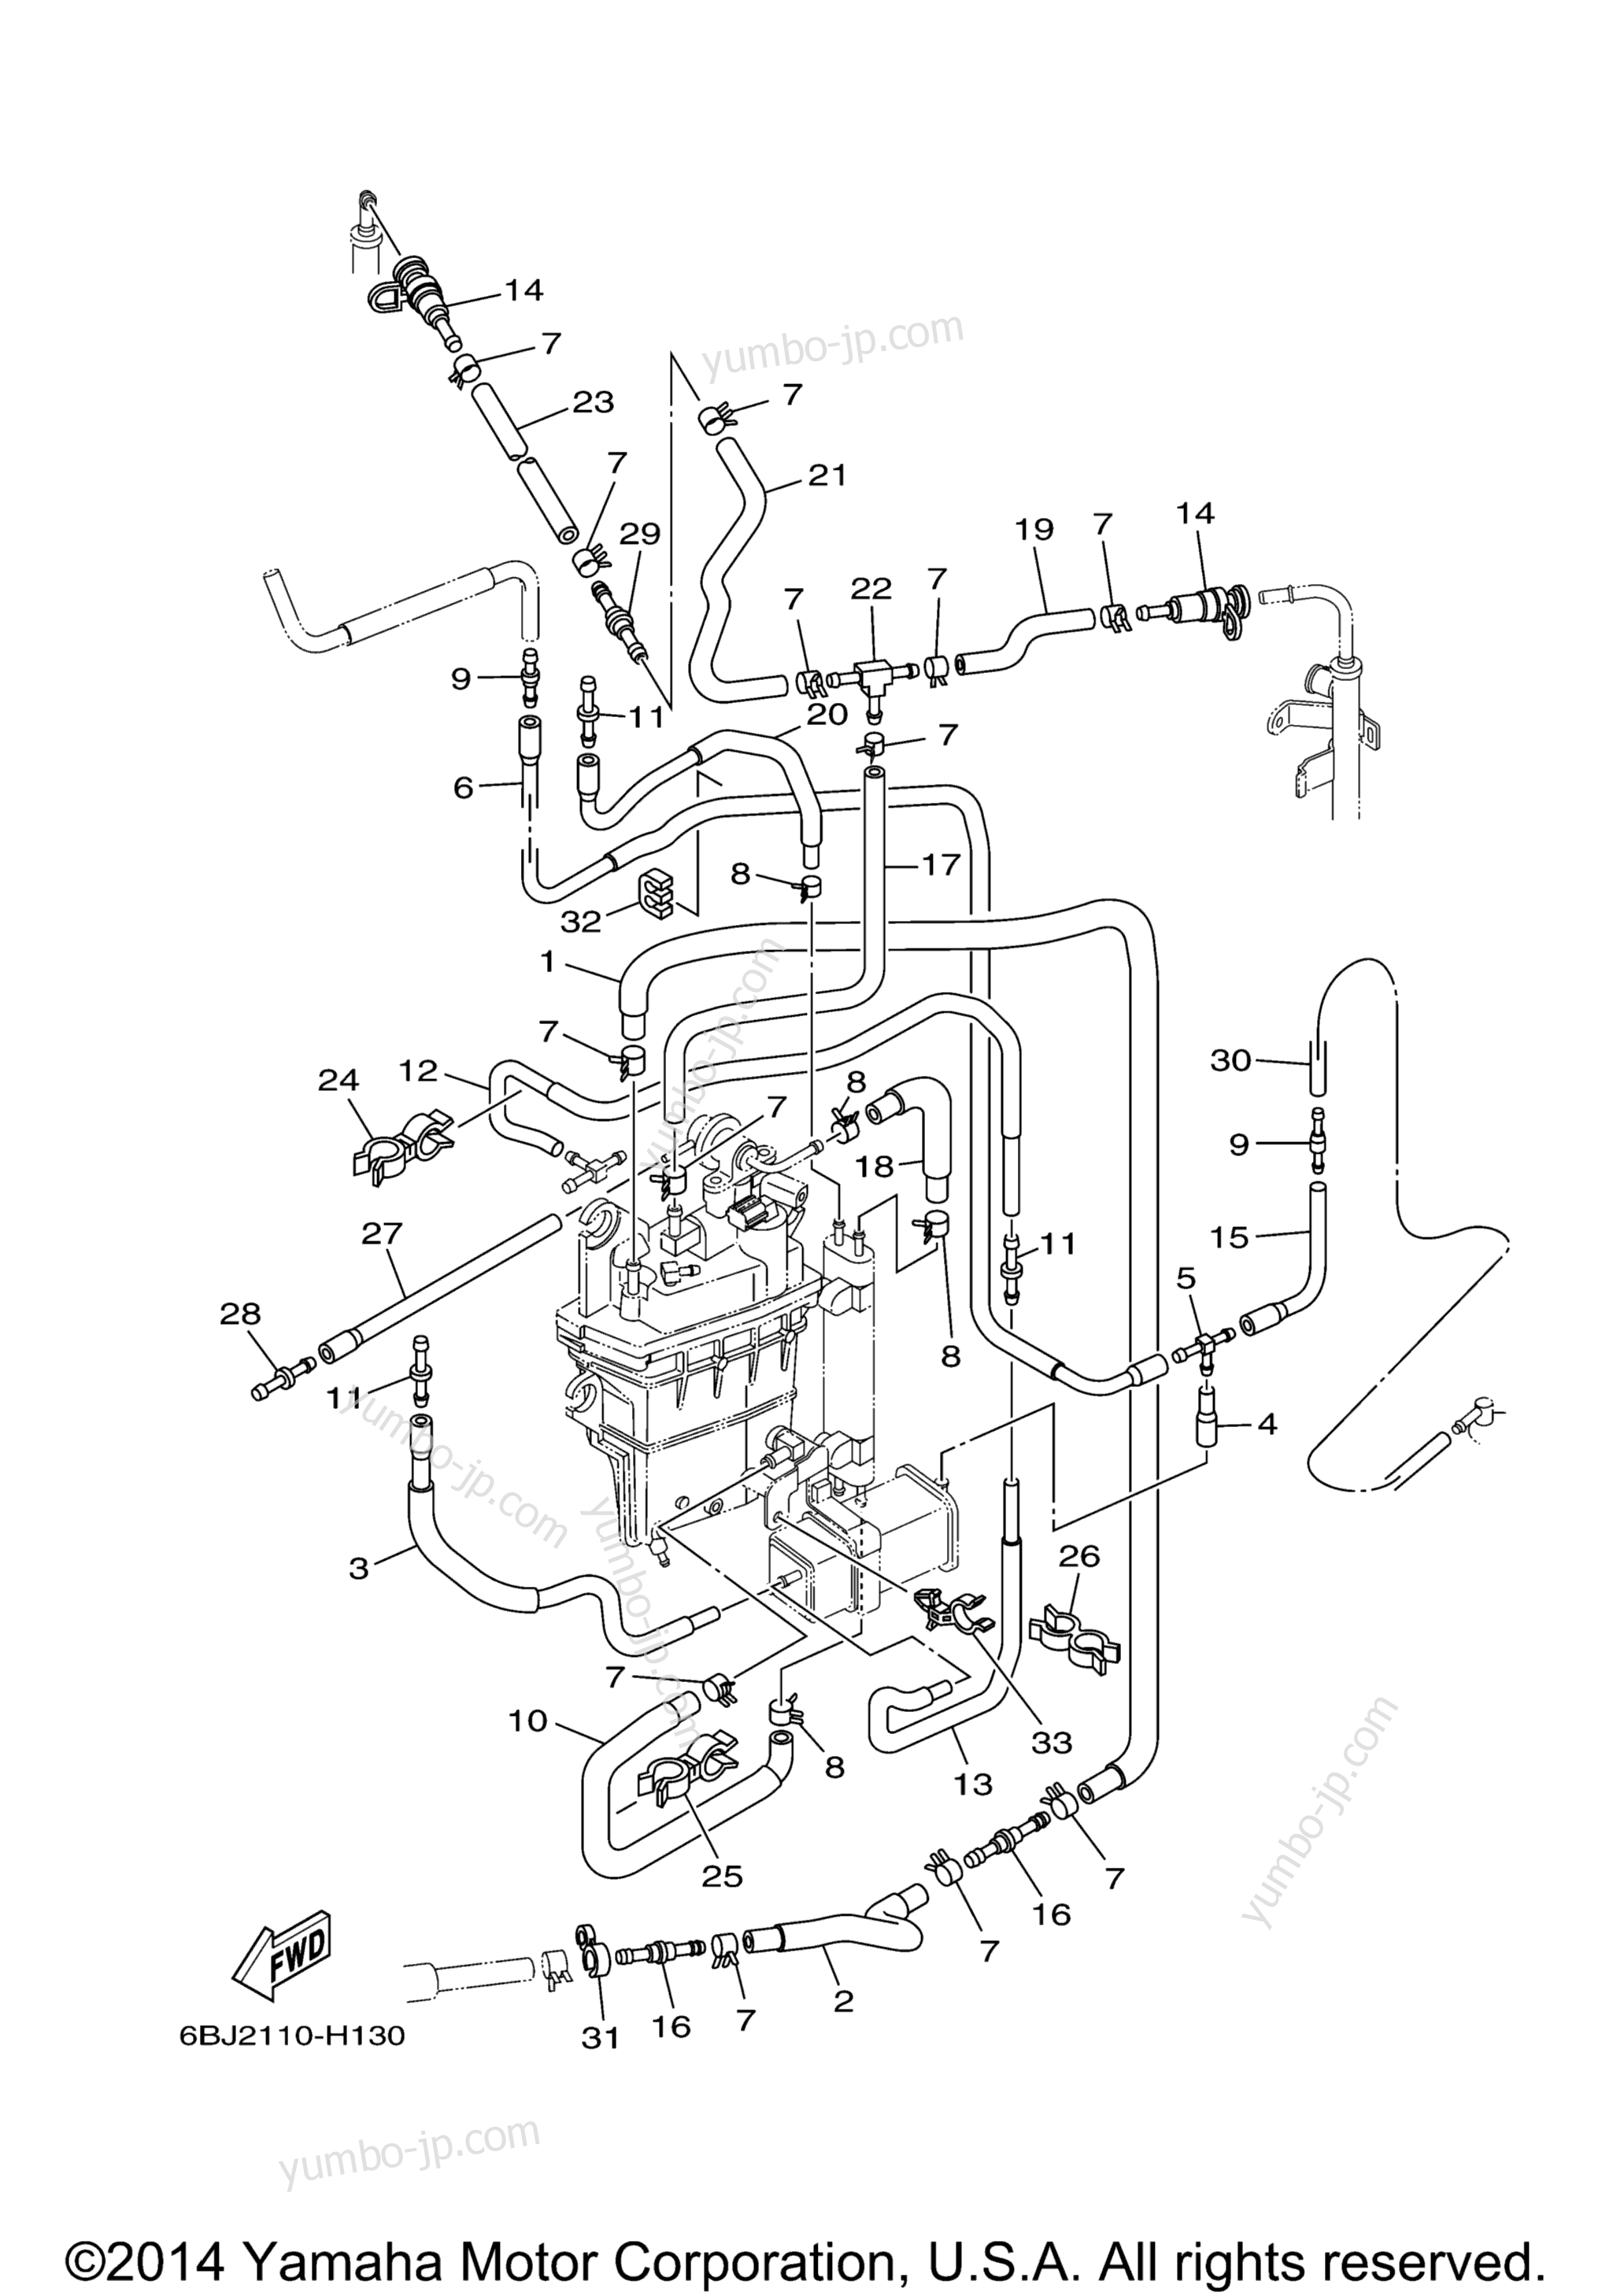 Fuel Injection Pump 2 для лодочных моторов YAMAHA F350UCA_04 (0411) 2006 г.